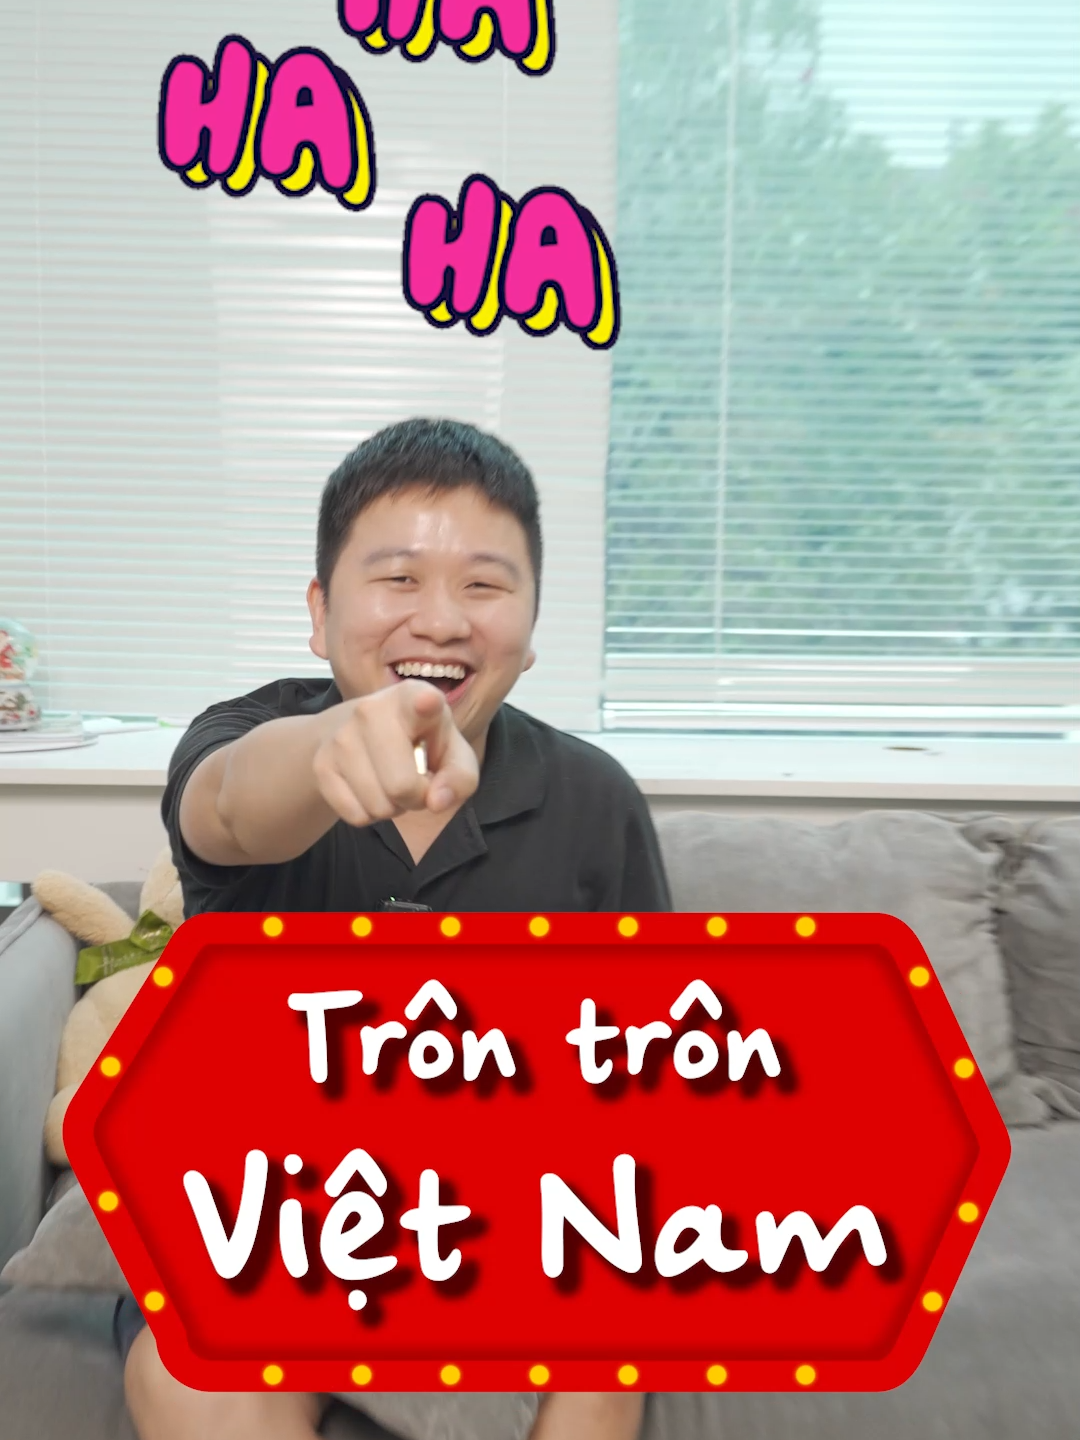 Trôn Việt Nam tại Schannel: Chỉ là trôn thôi, không phải thật đâu nhé ạ =)) #schannel #funny #LearnOnTikTok